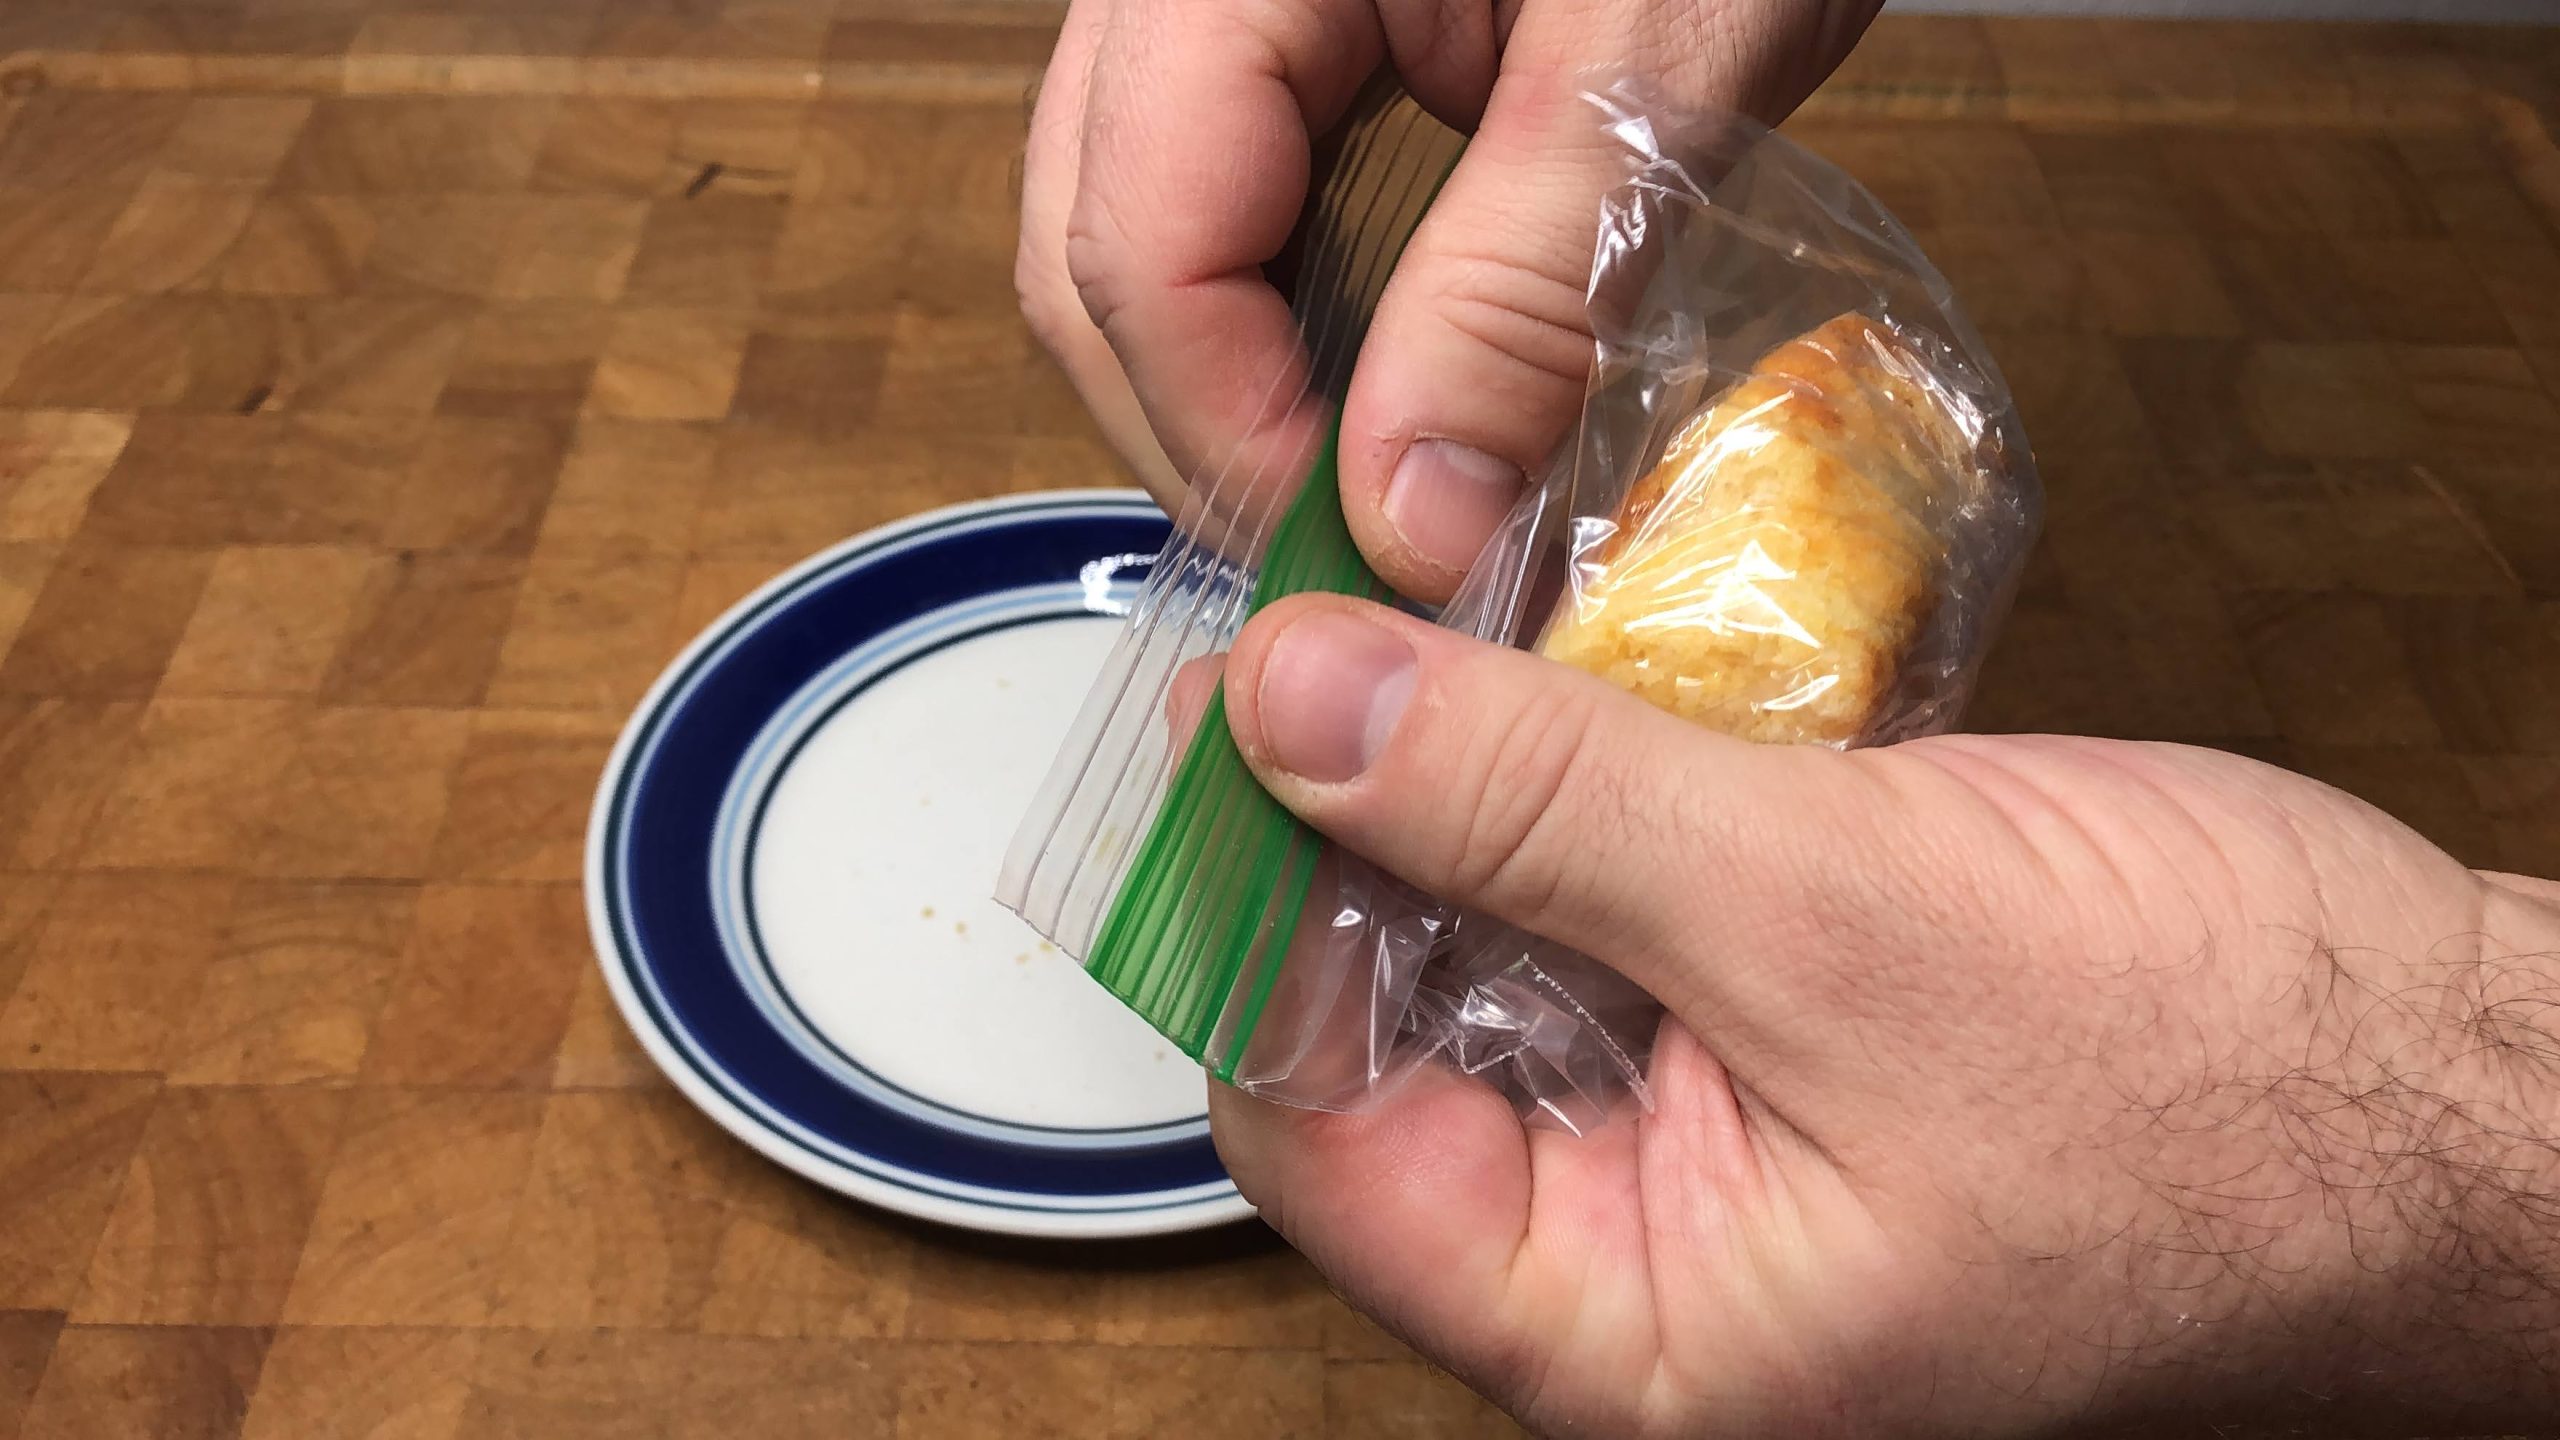 zipping a freezer bag filled with cornbread shut